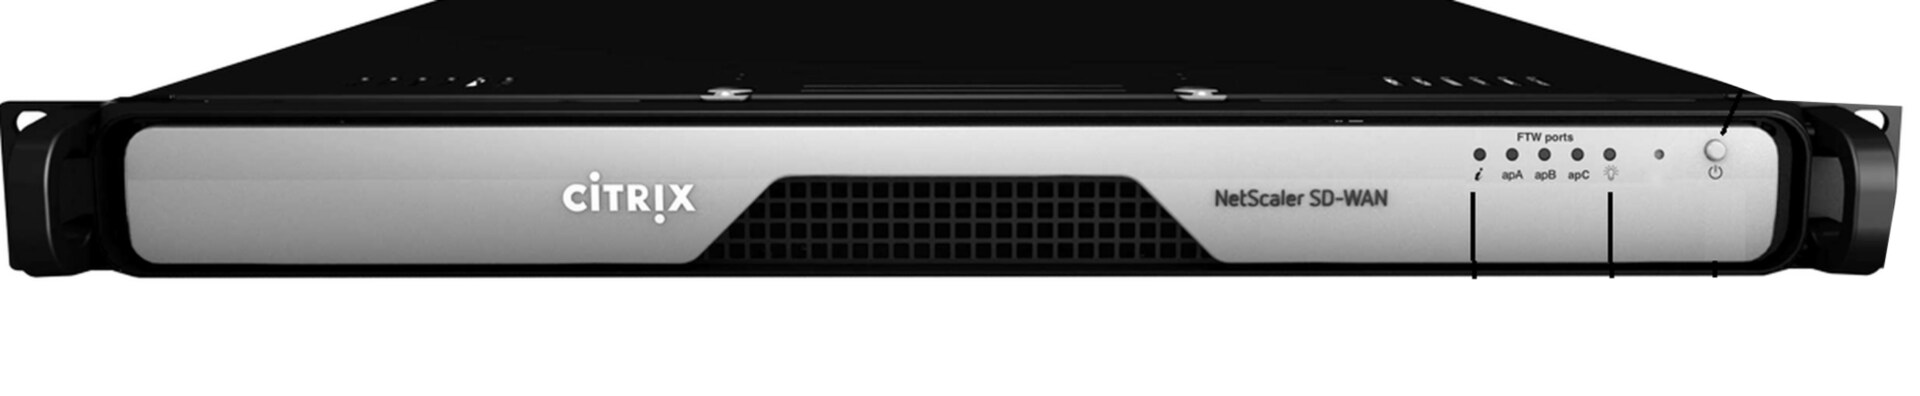 Citrix NetScaler SD-WAN 410 150Mbps Standard Appliance